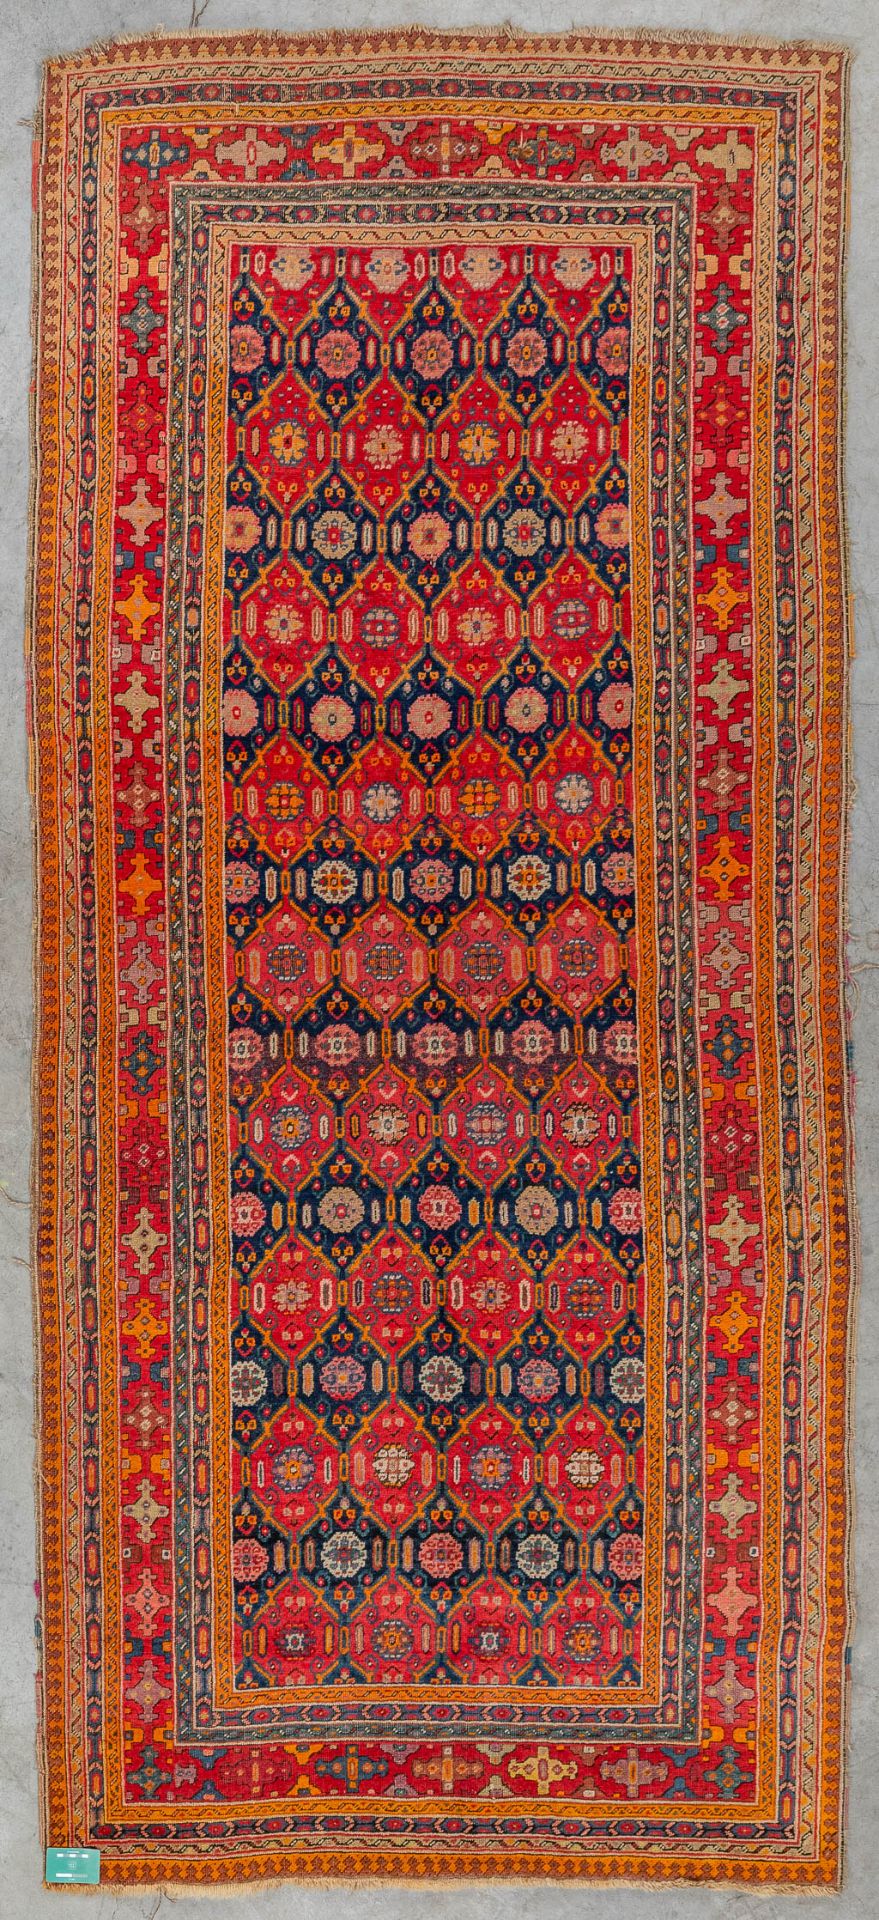 An Oriental hand-made carpet, Karabach (D:290 x W:128 cm) - Image 2 of 8